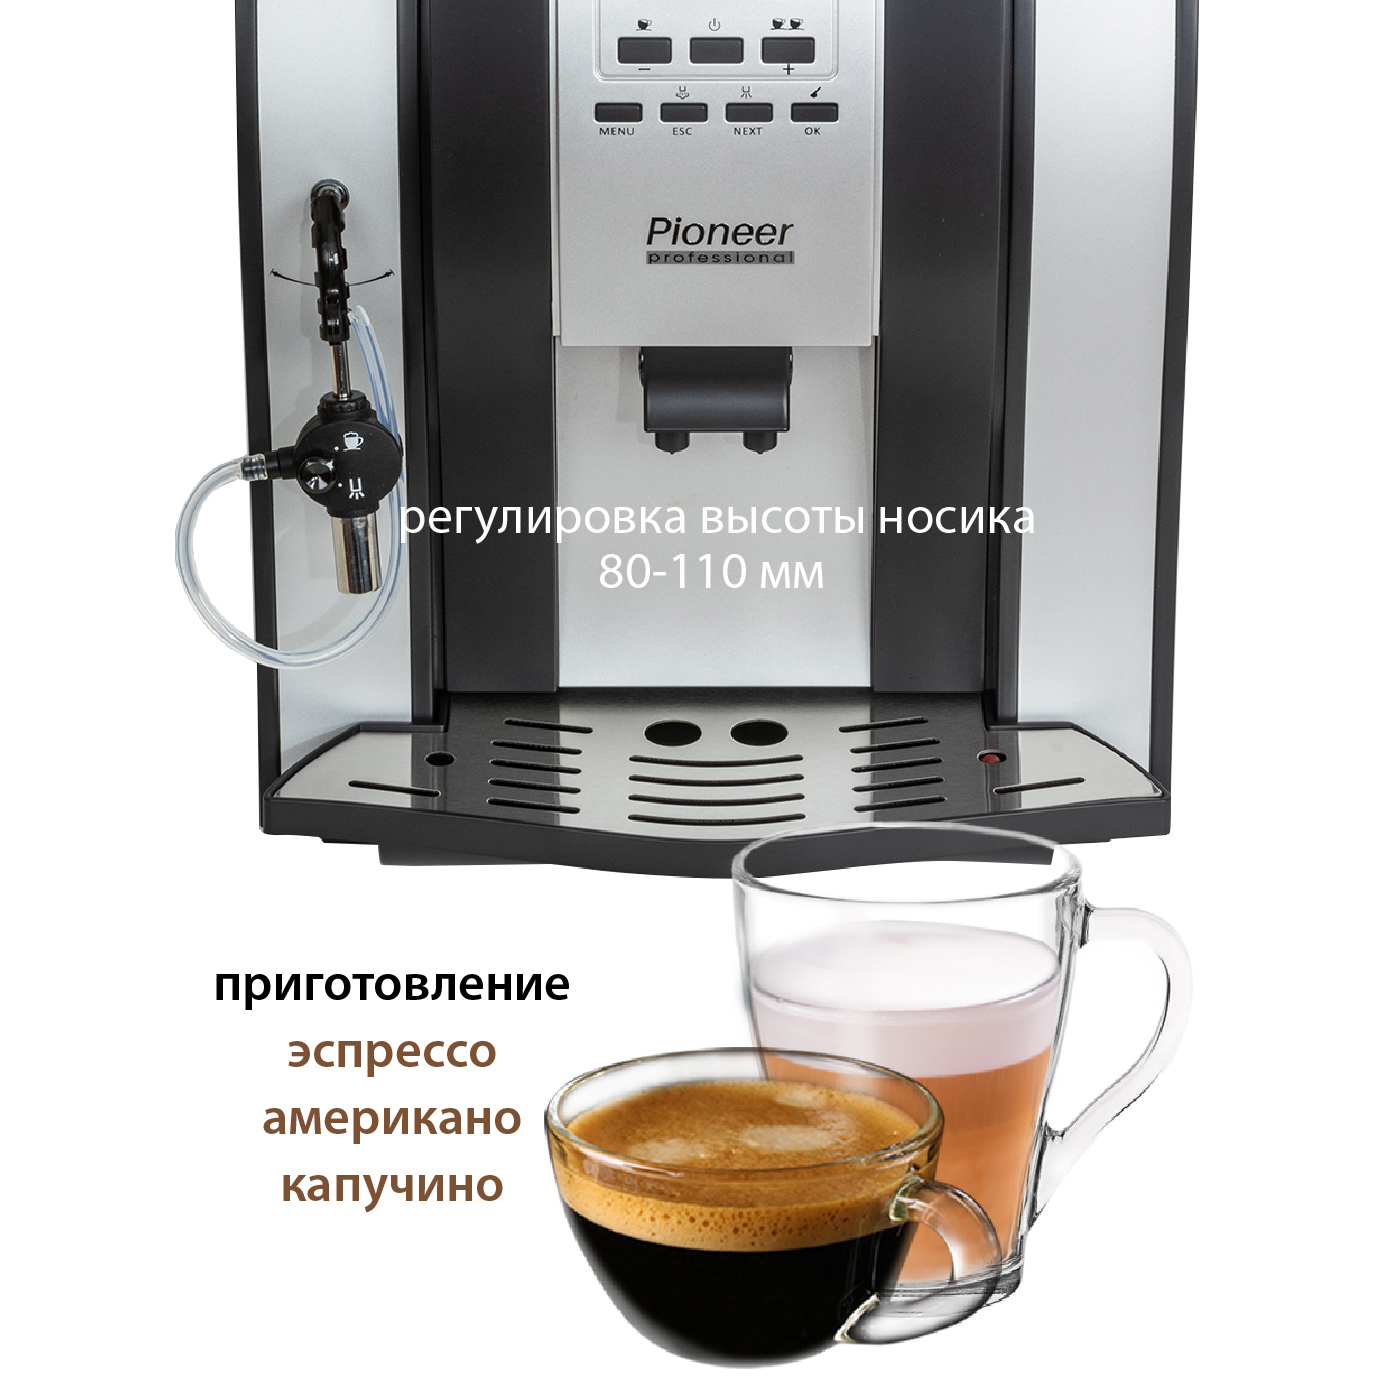 Автоматическая кофемашина Pioneer CMA007